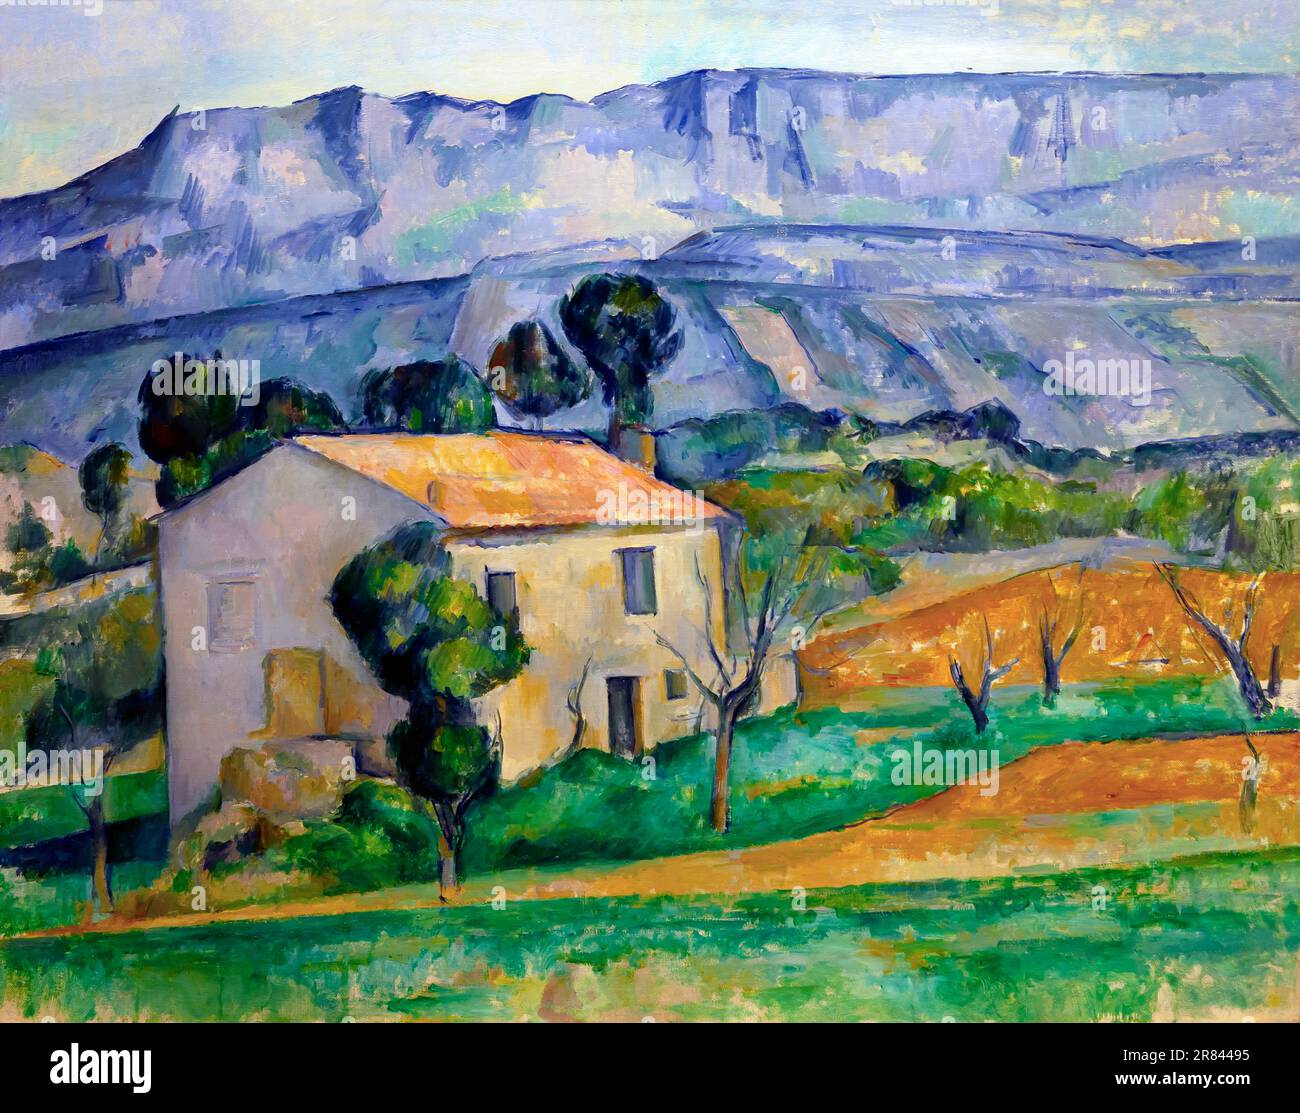 Maison en Provence, Paul Cézanne, vers 1886, Indianapolis Museum of Art, Indianapolis, Indiana, USA, Amérique du Nord Banque D'Images